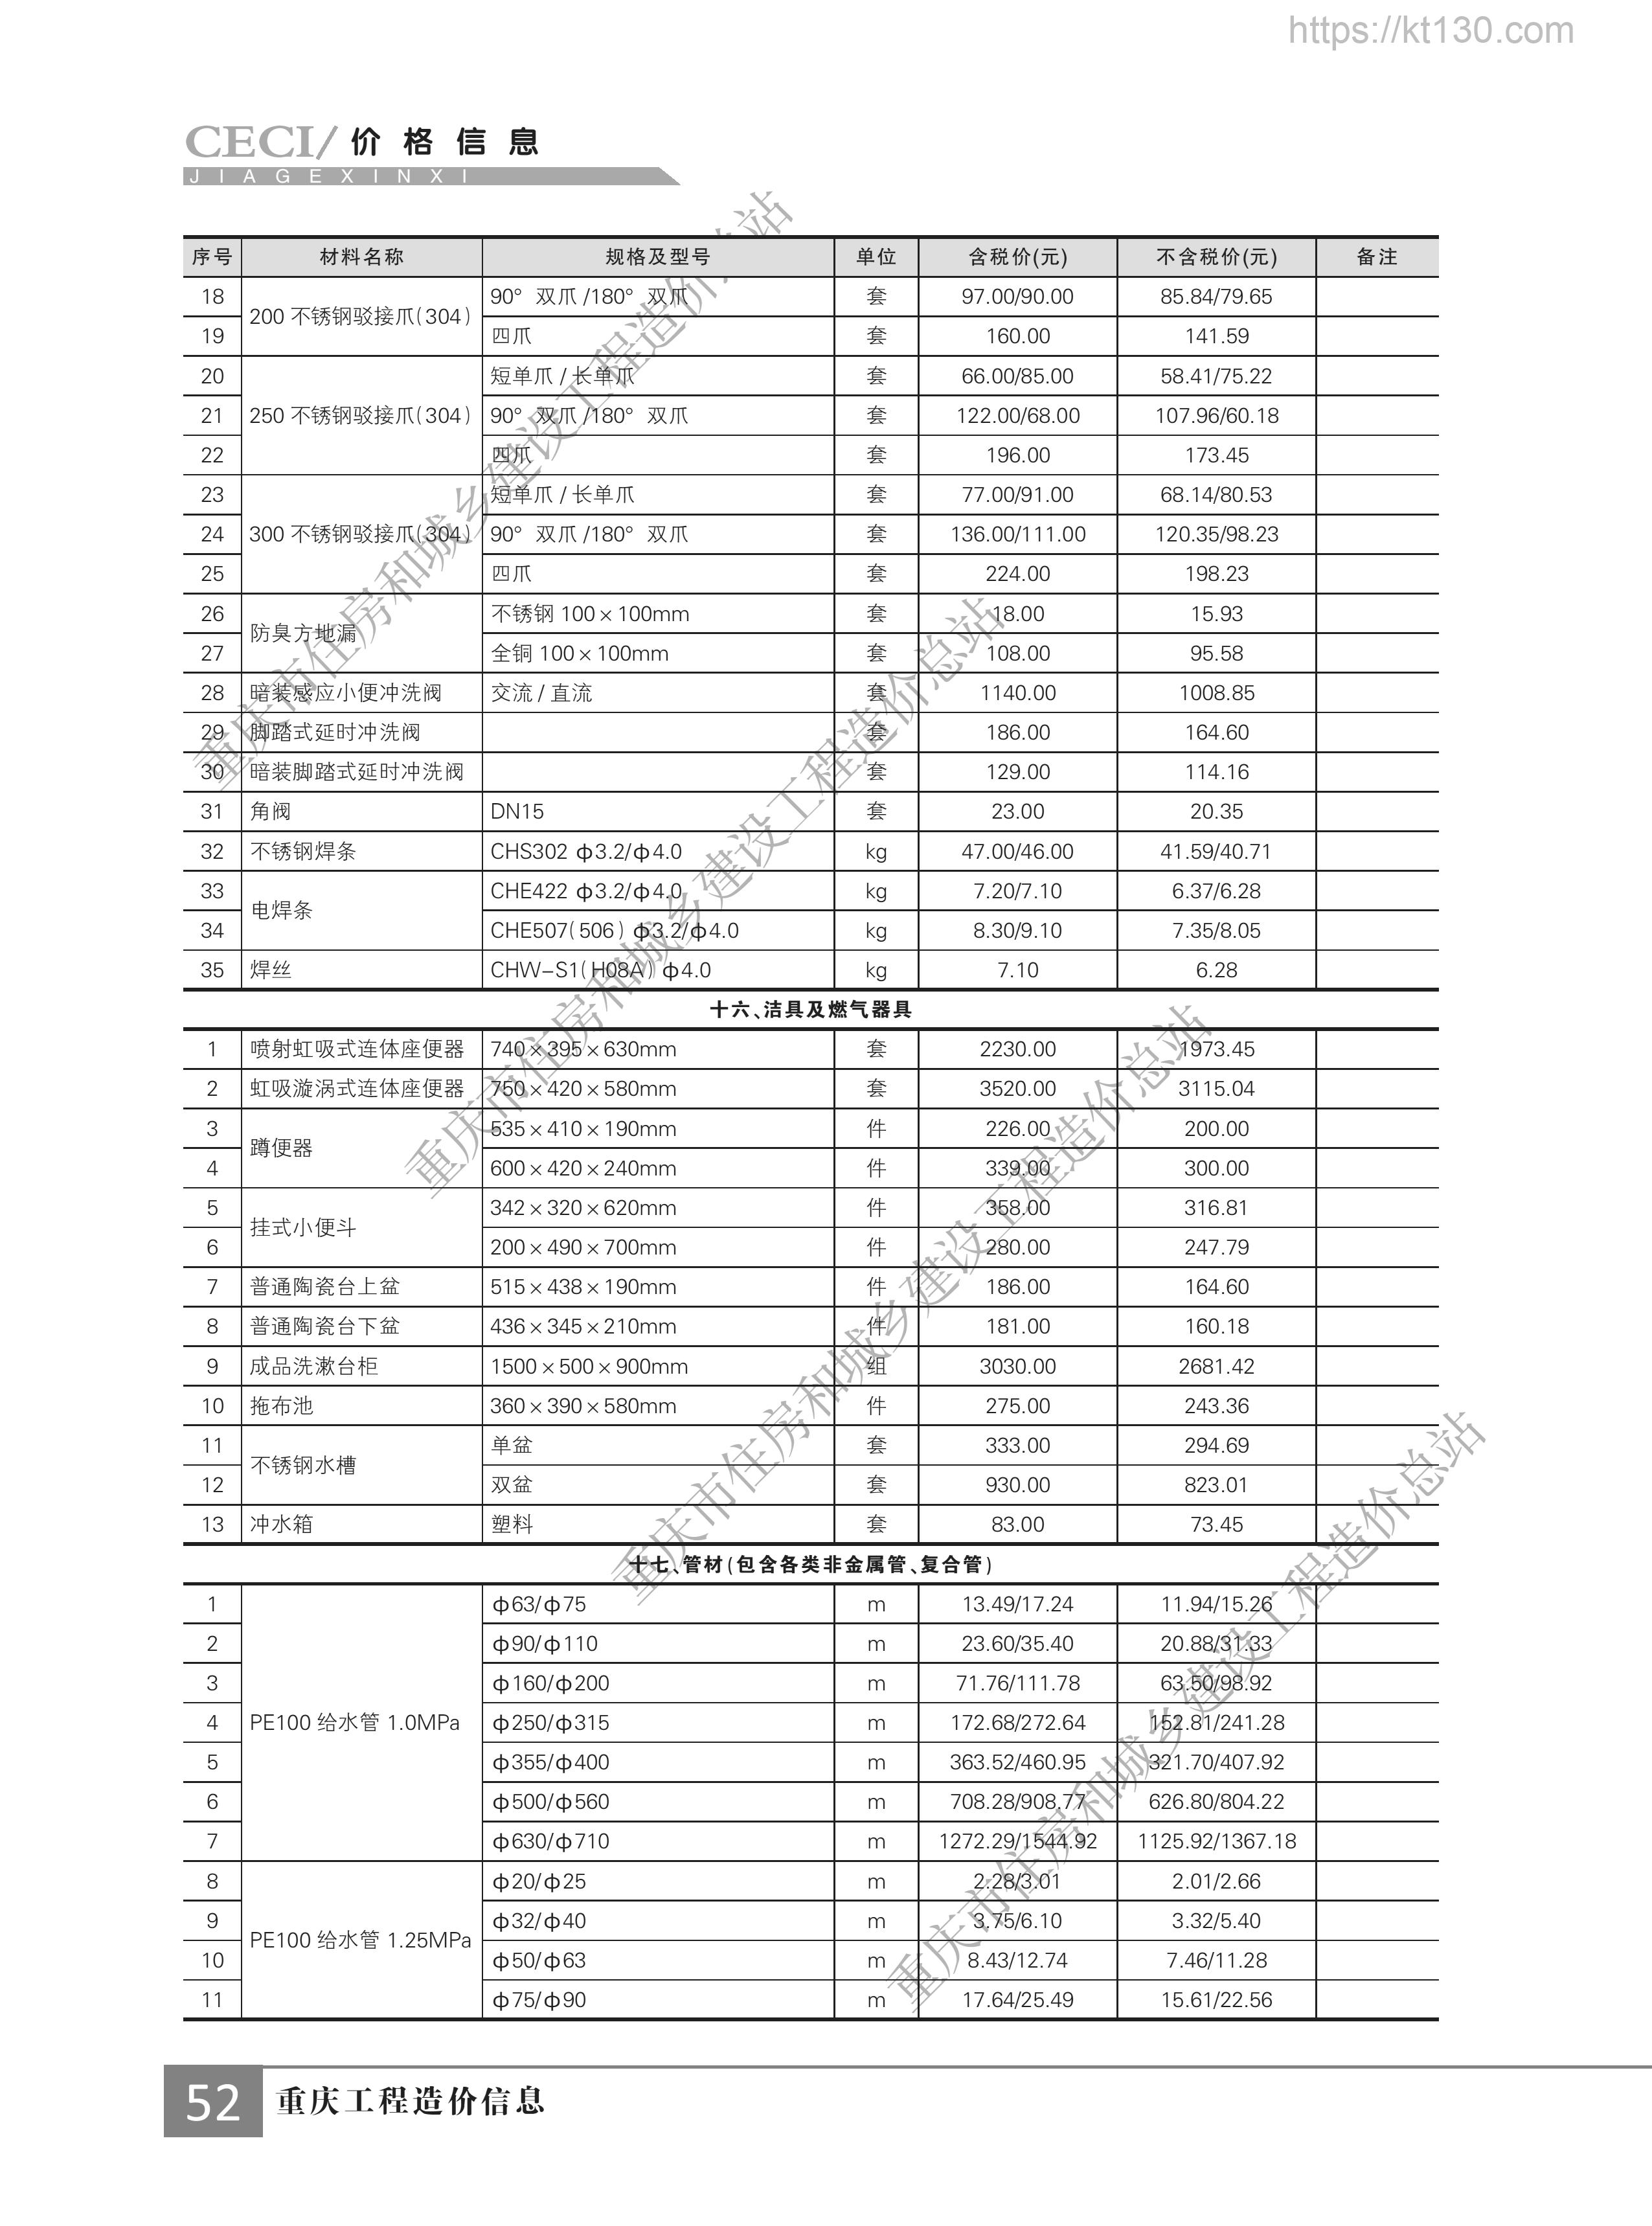 重庆市2022年11月份洁具及燃气器具信息价